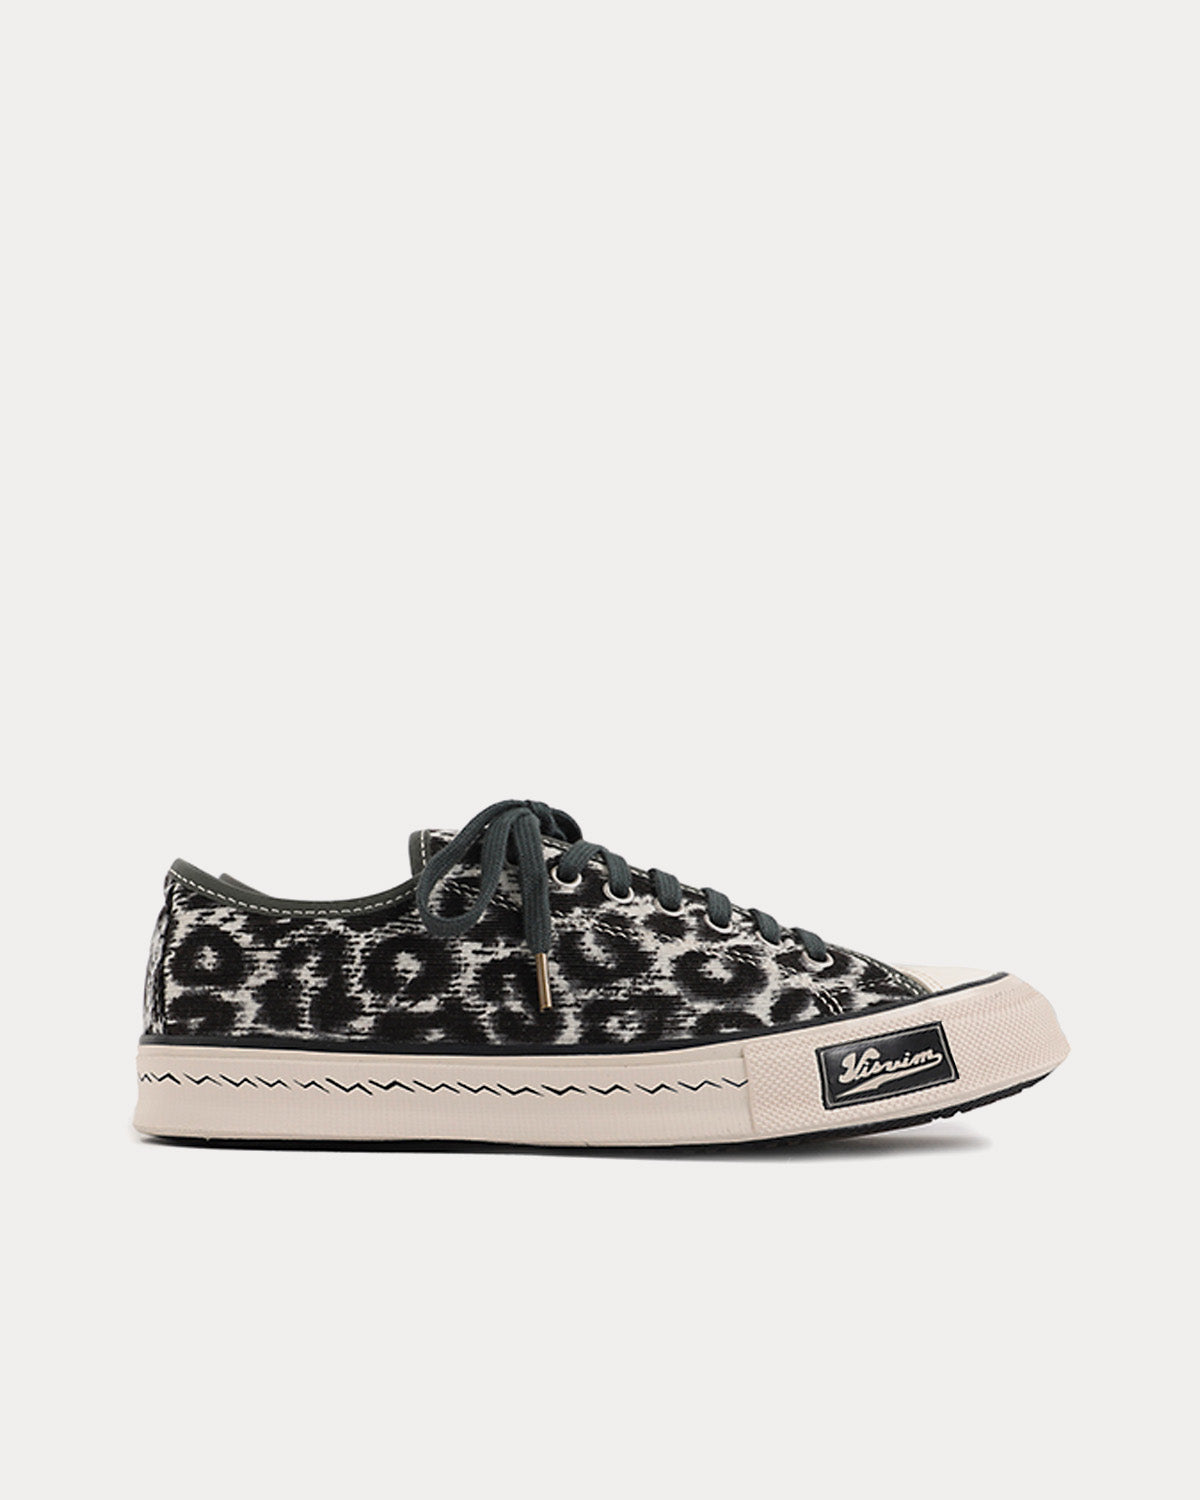 Visvim - Skagway Lo Leopard Grey Low Top Sneakers